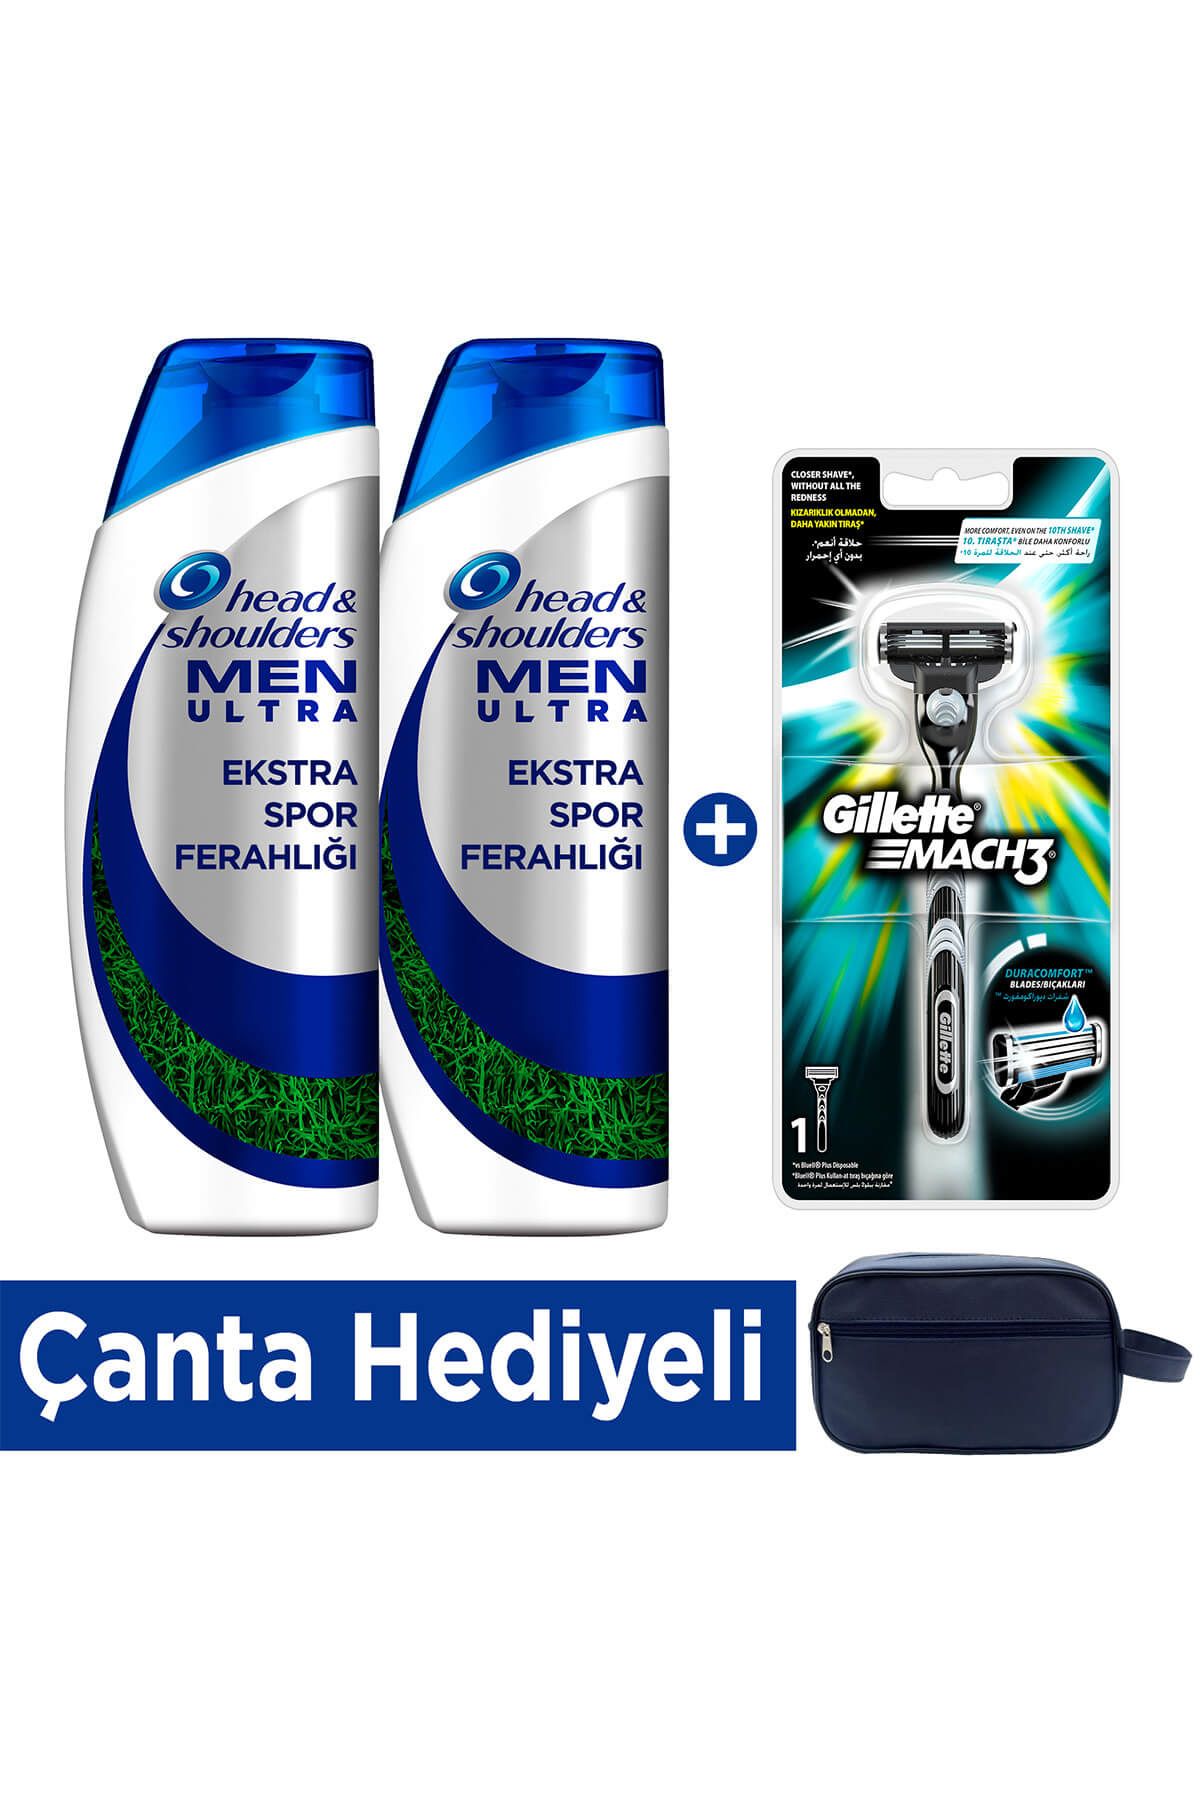 Gillette Men Ultra Ekstra Spor Ferahlığı Şampuan 2 x 500 ml + Mach 3 Tıraş Makinesi (Çanta Hediyeli)